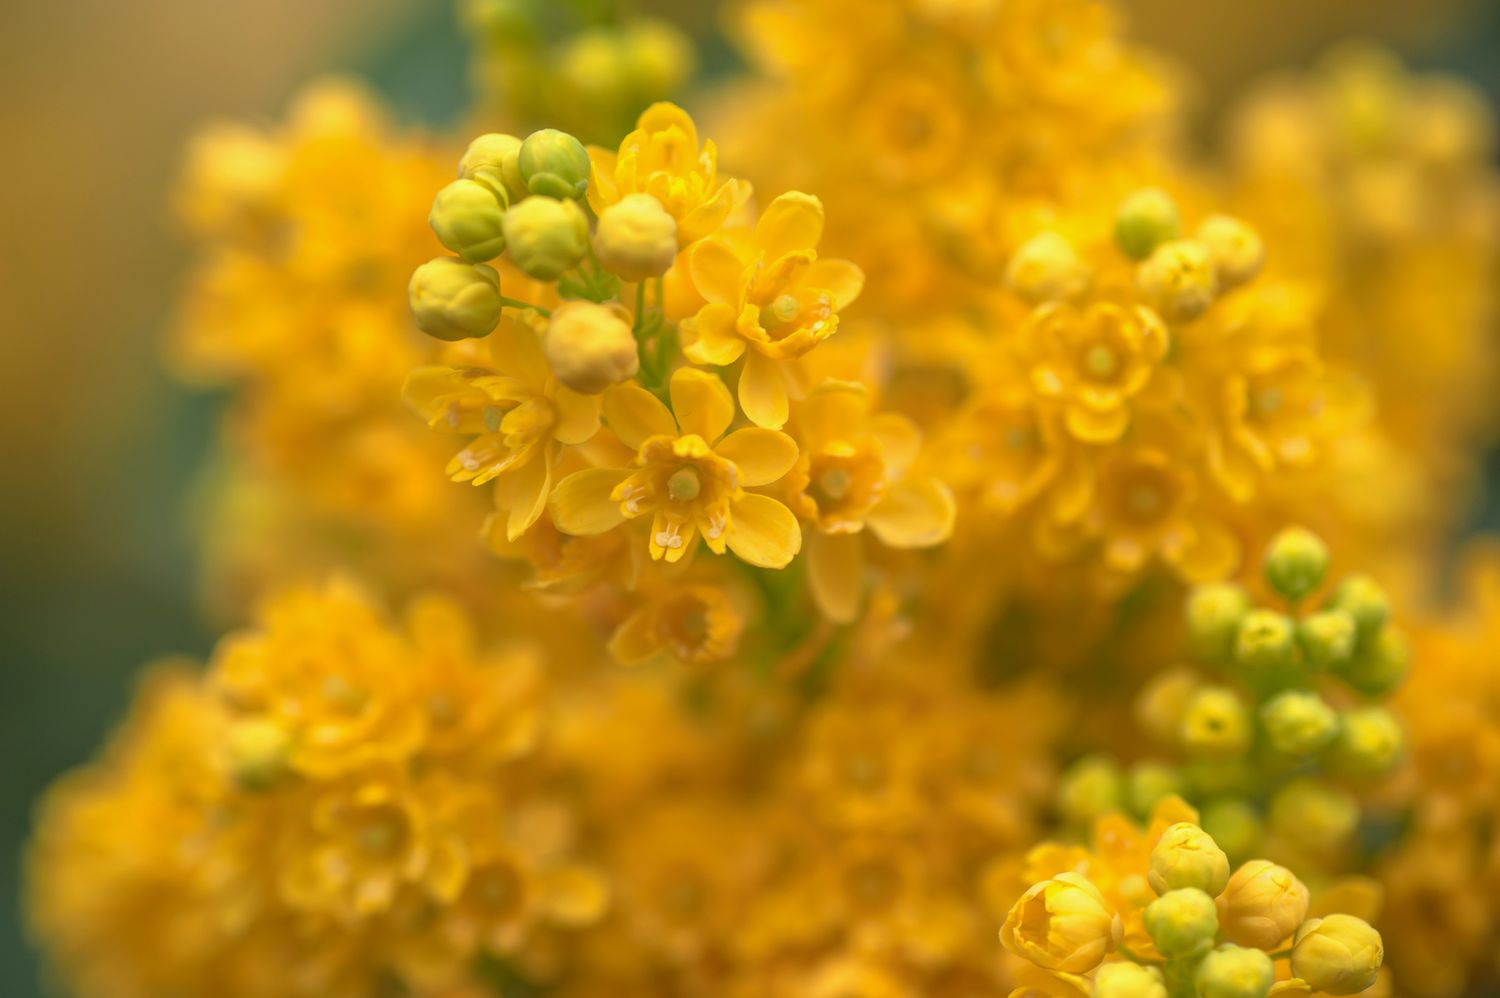 Oregon-Traube mit gelben Blüten und Knospen in Nahaufnahme